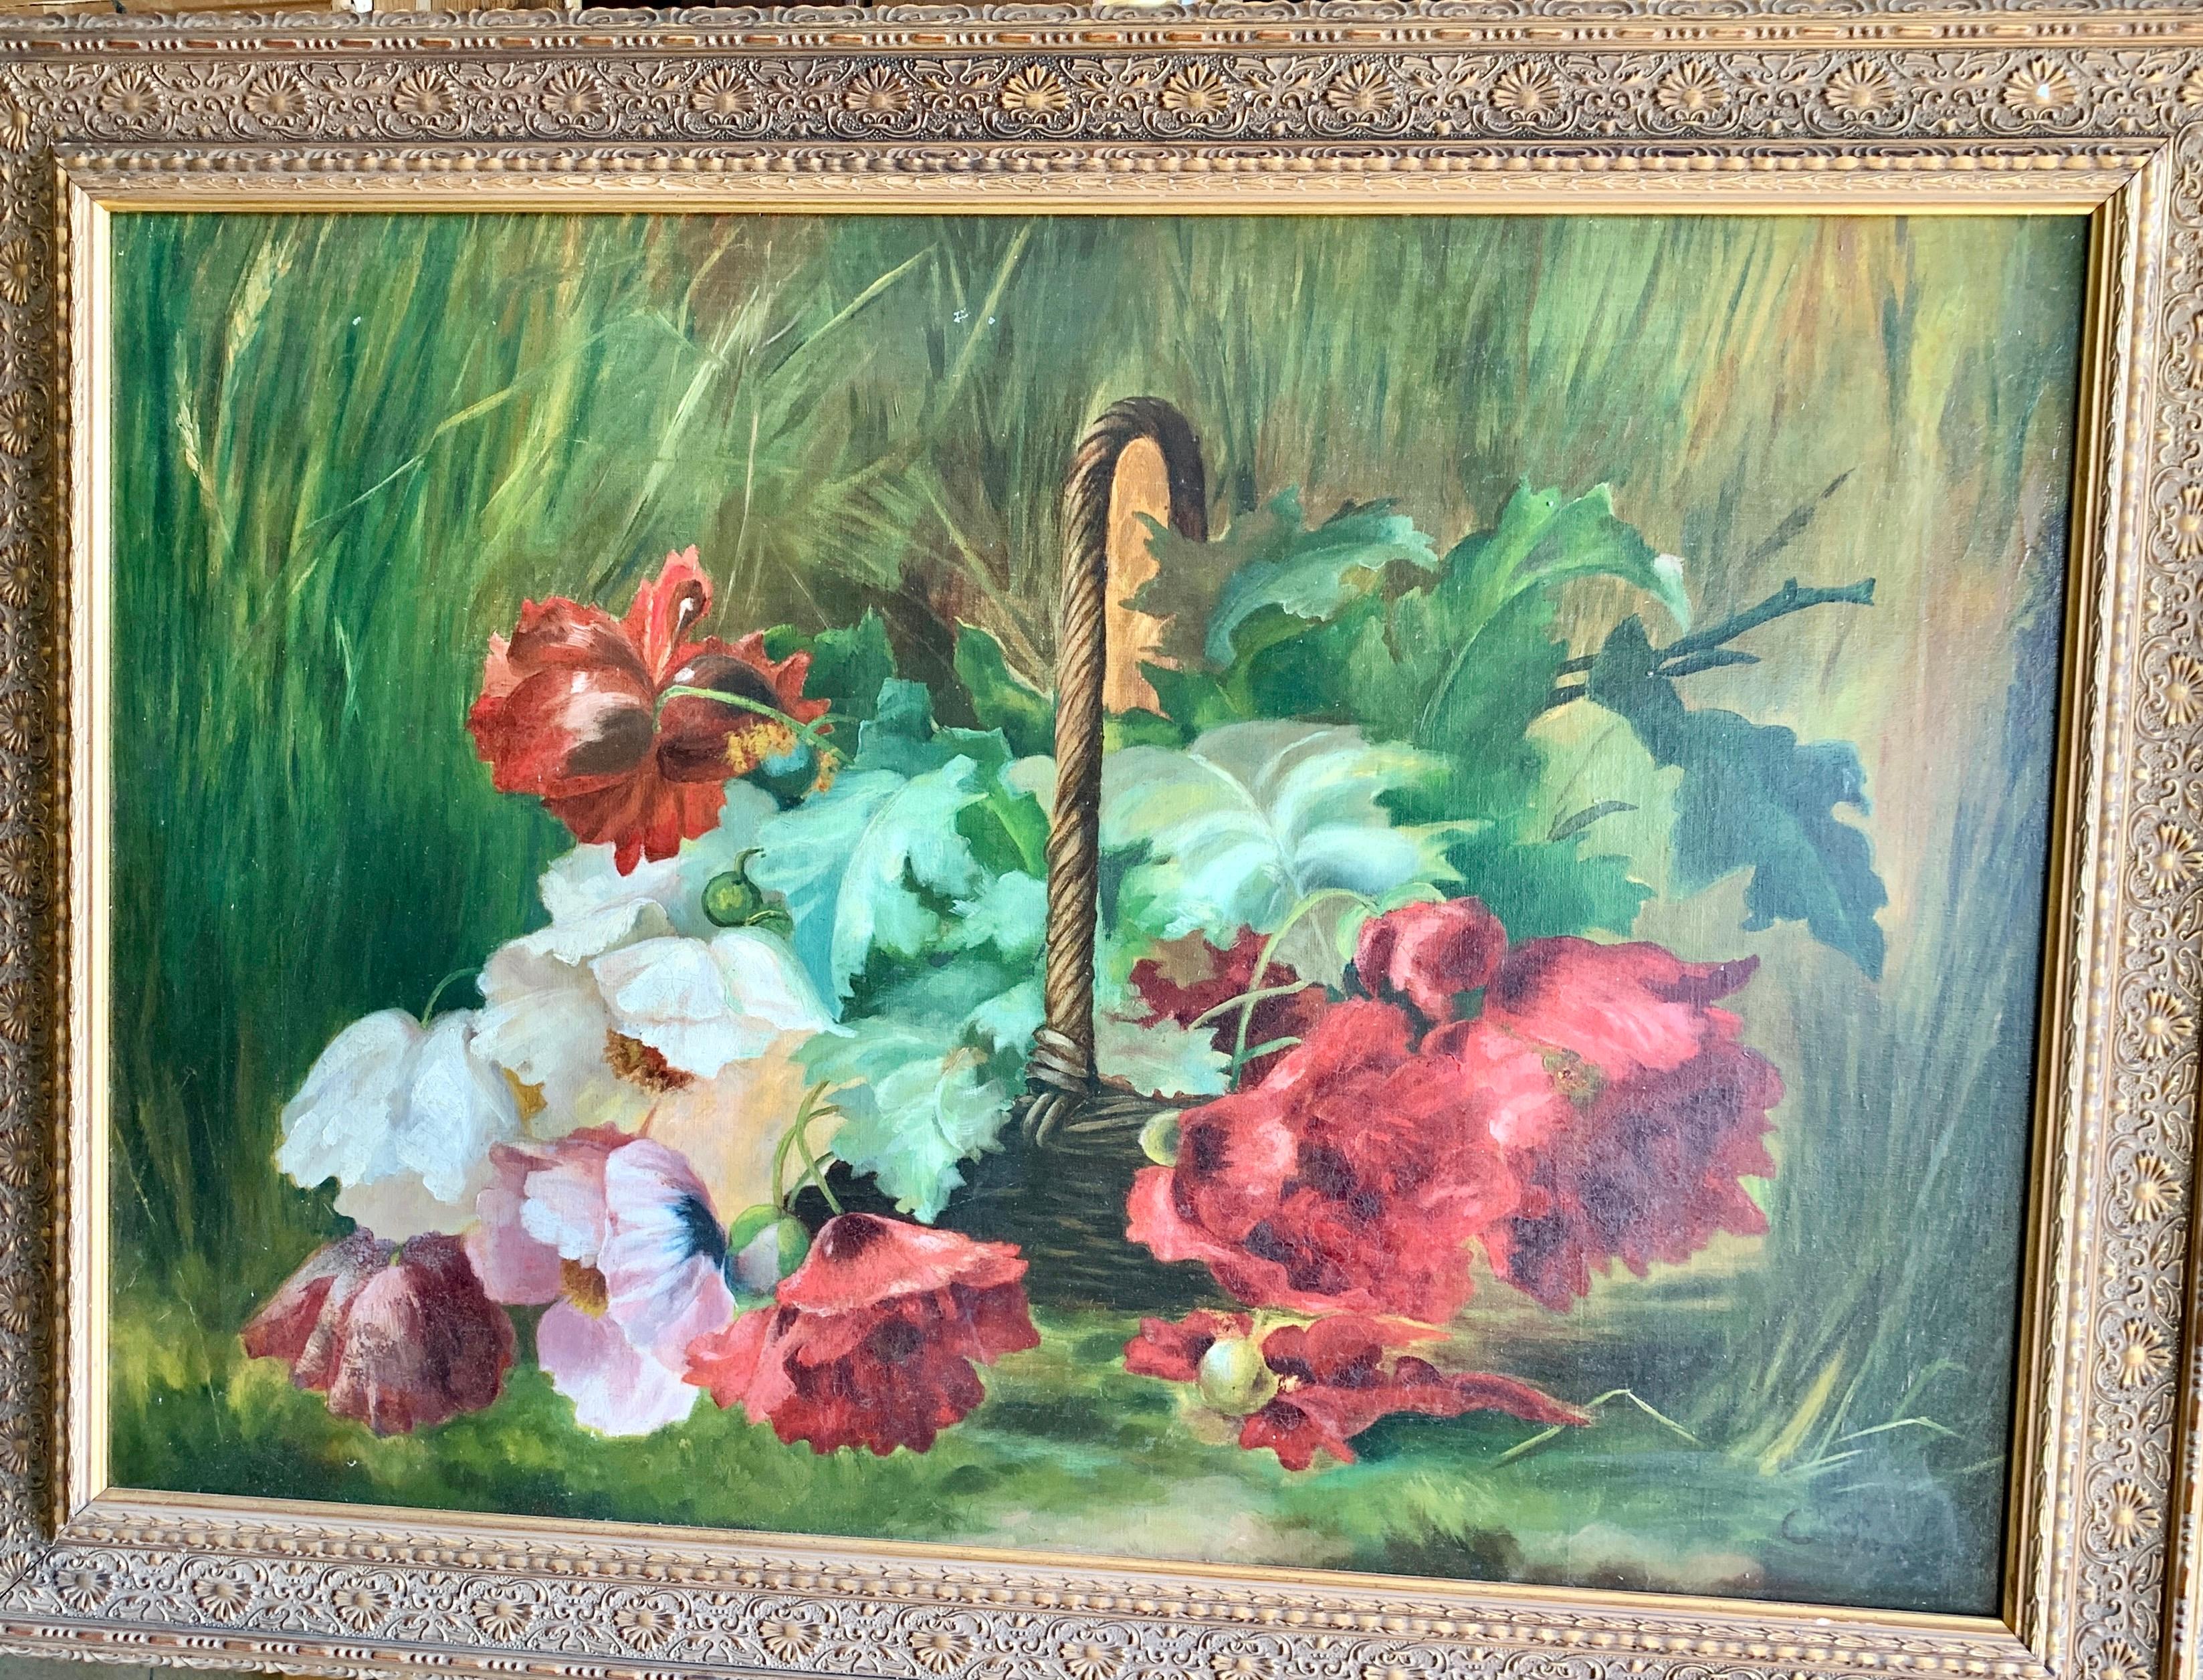 Still-Life Painting C.Perret - Nature morte impressionniste de fleurs, coquelicots ou pivoines dans un paysage